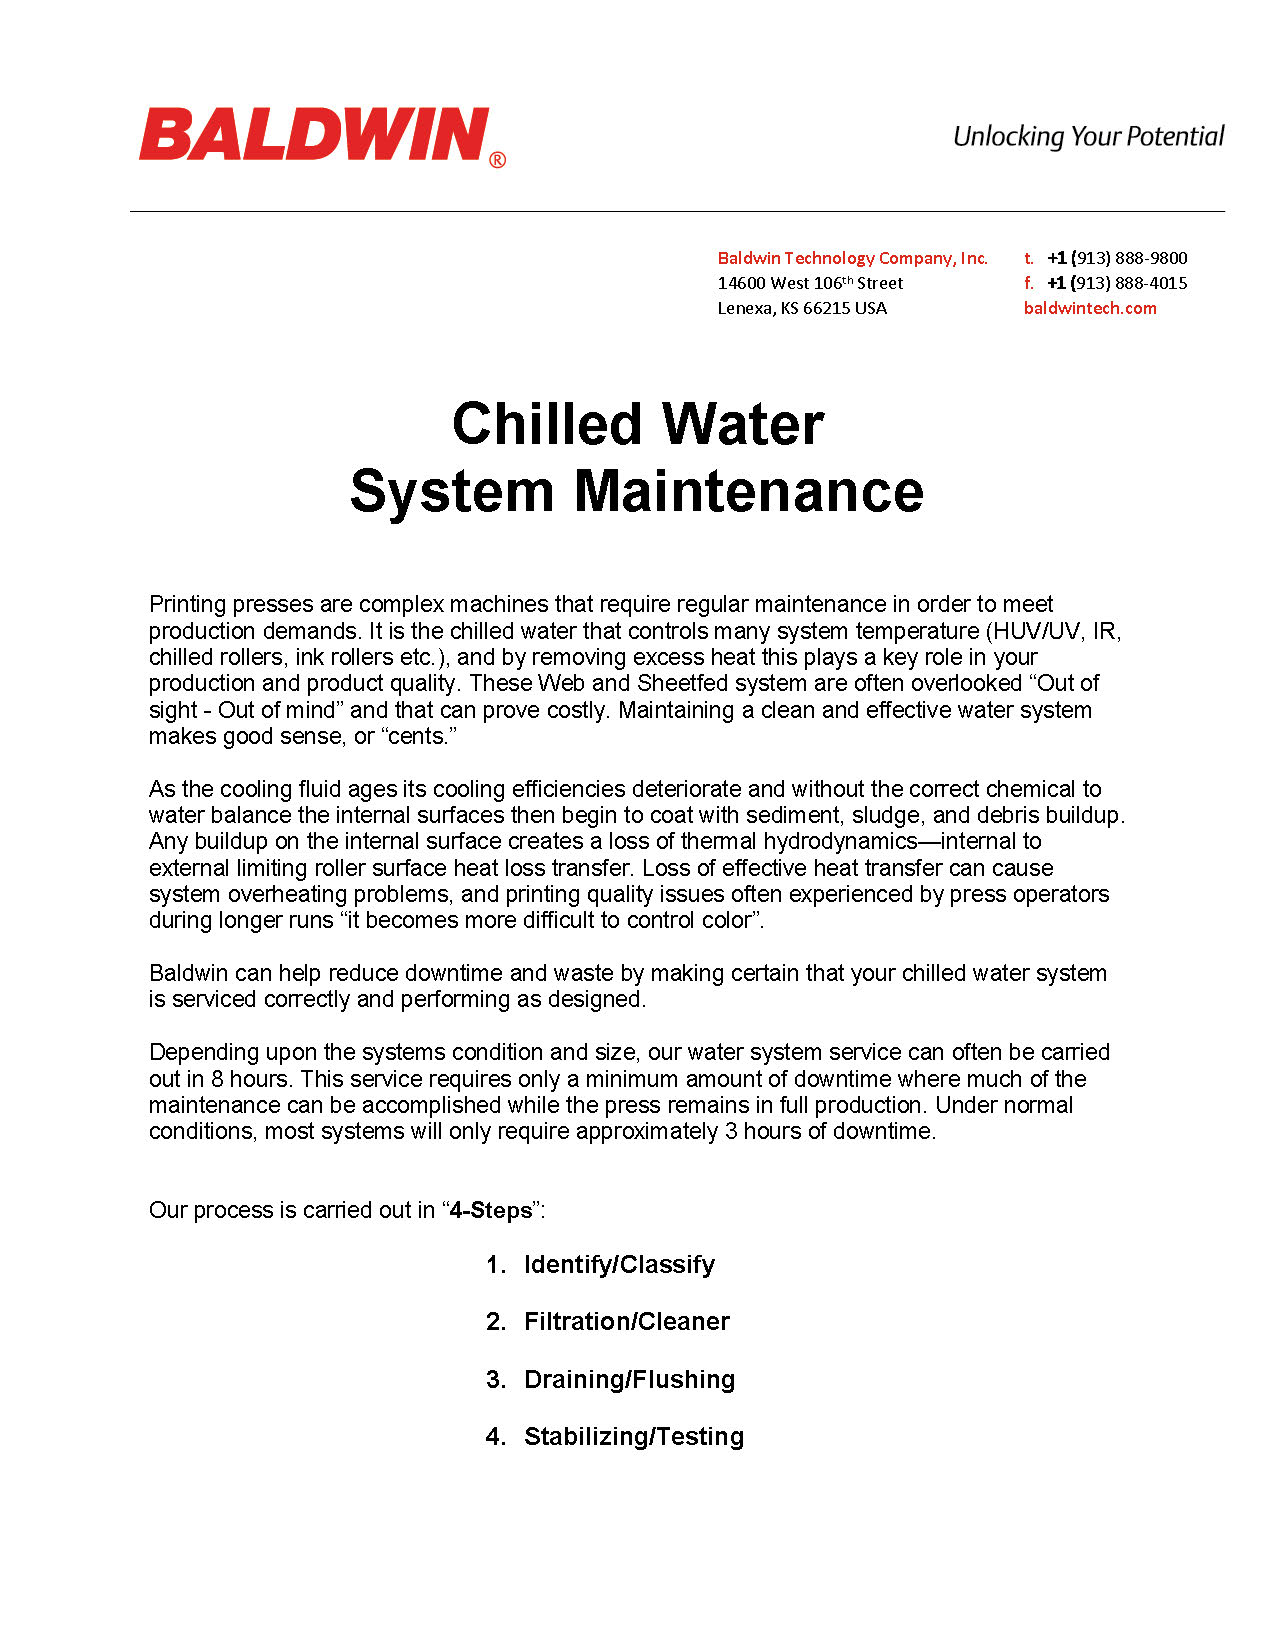 冷水系统维护 PDF_Page_1.jpg